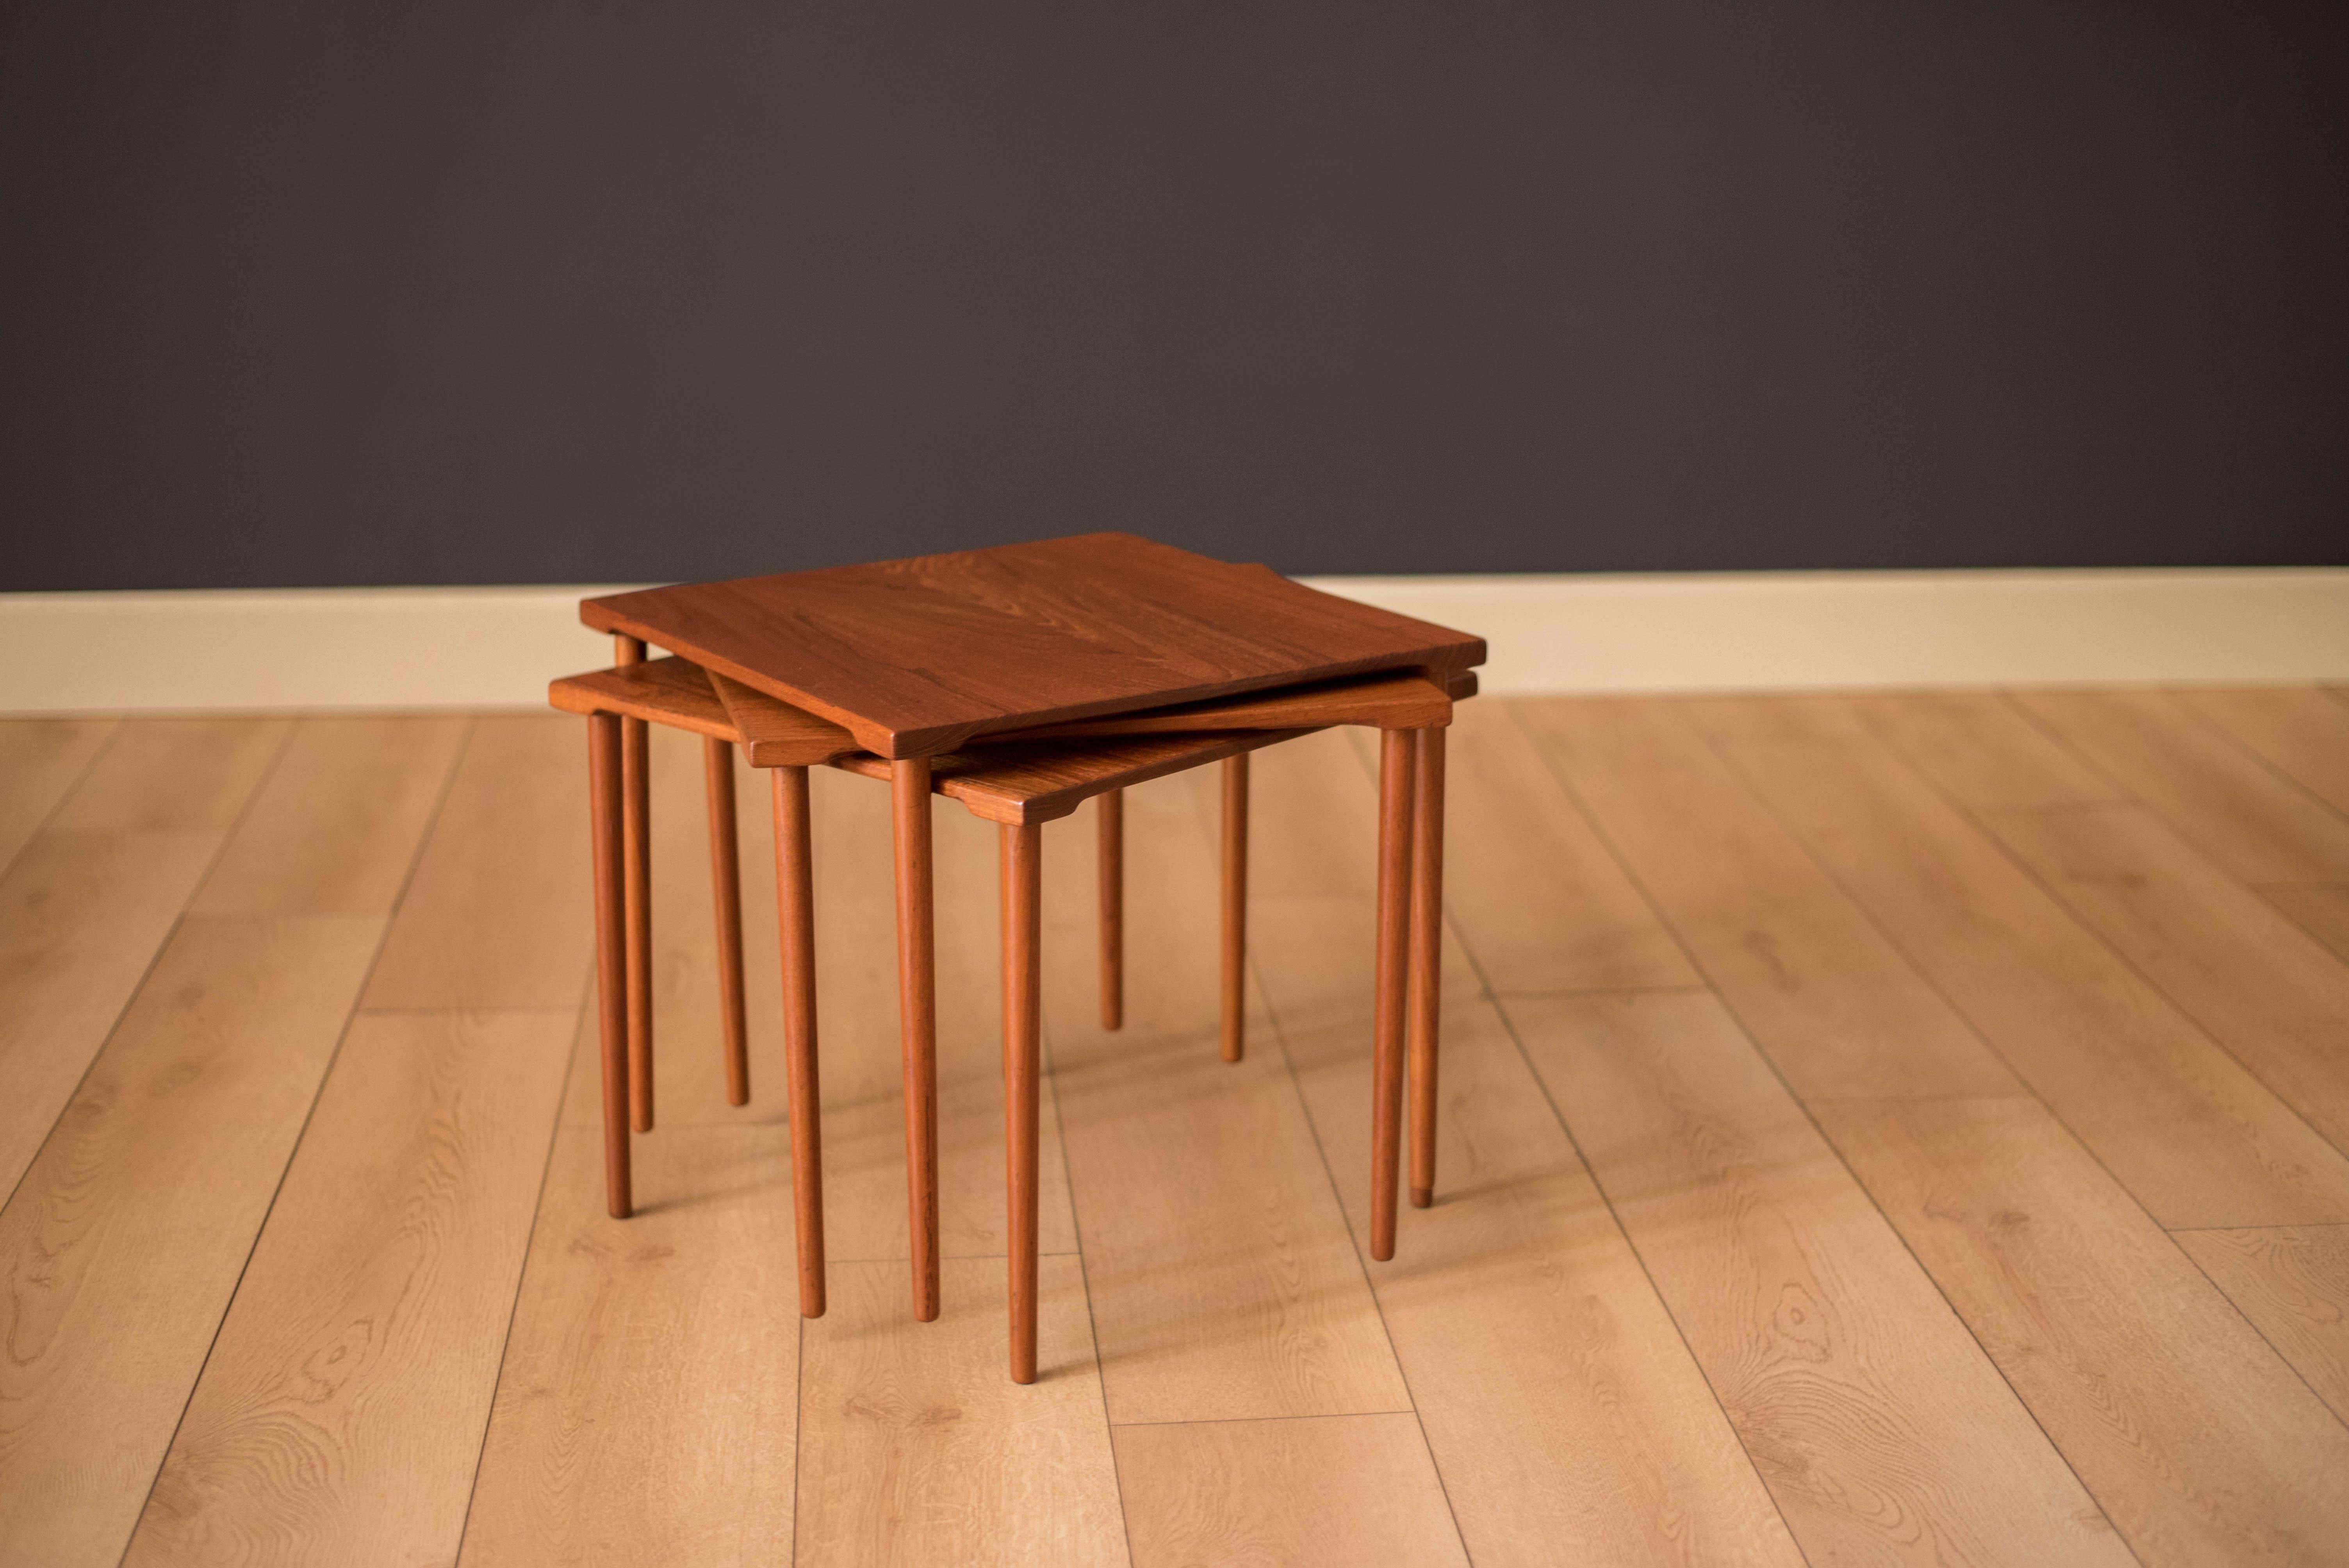 Stapelbarer Beistelltisch aus der frühen Mitte des Jahrhunderts, hergestellt von France & Daverkosen, Dänemark. Die Tischplatten sind aus massivem, geplanktem Teakholz mit klassischen, schlanken Dübelbeinen gefertigt. Dieses Set kann als Couchtisch